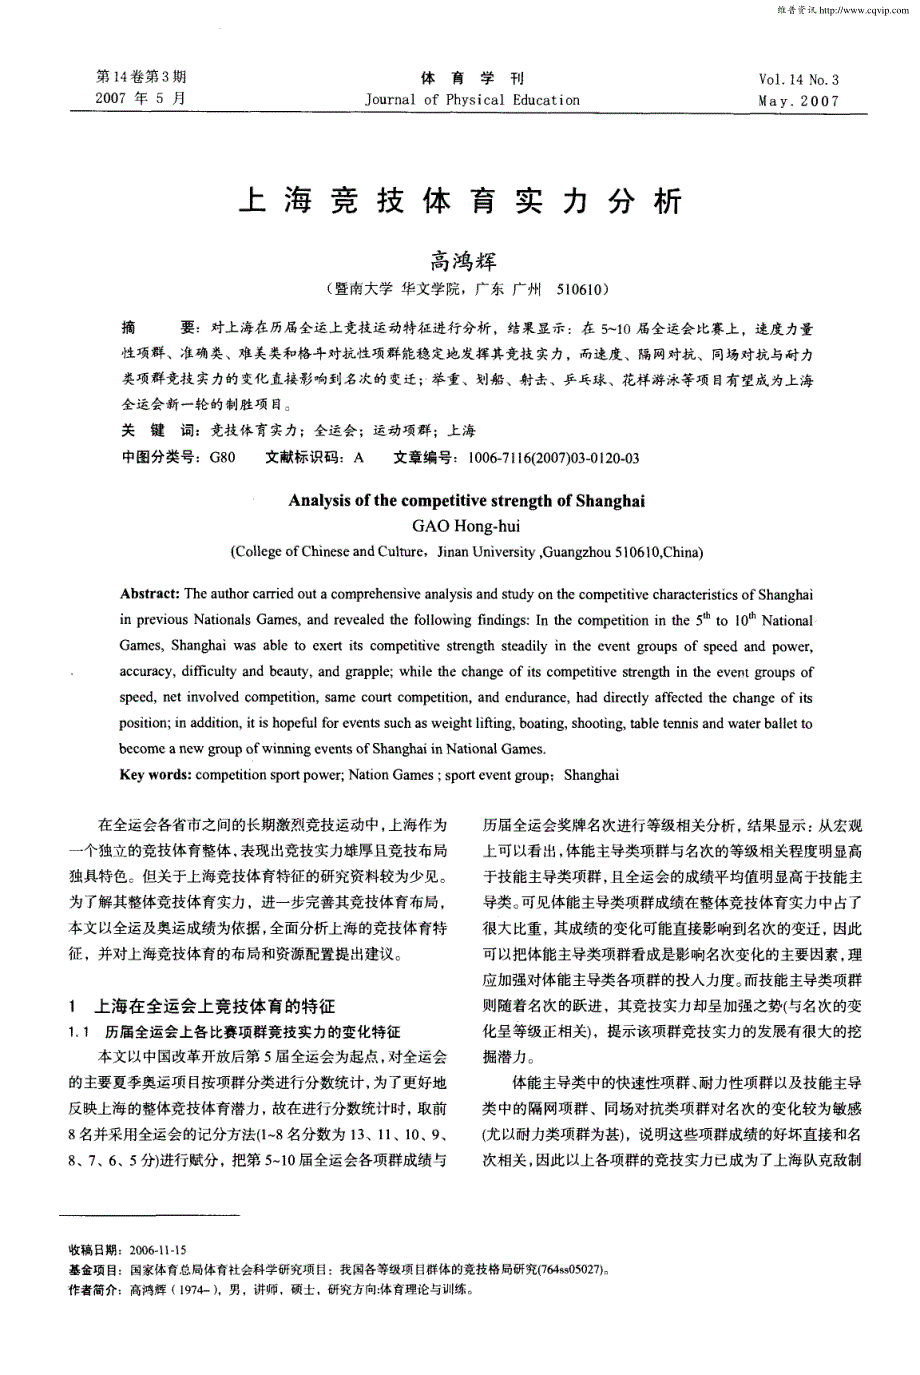 上海竞技体育实力分析_第1页